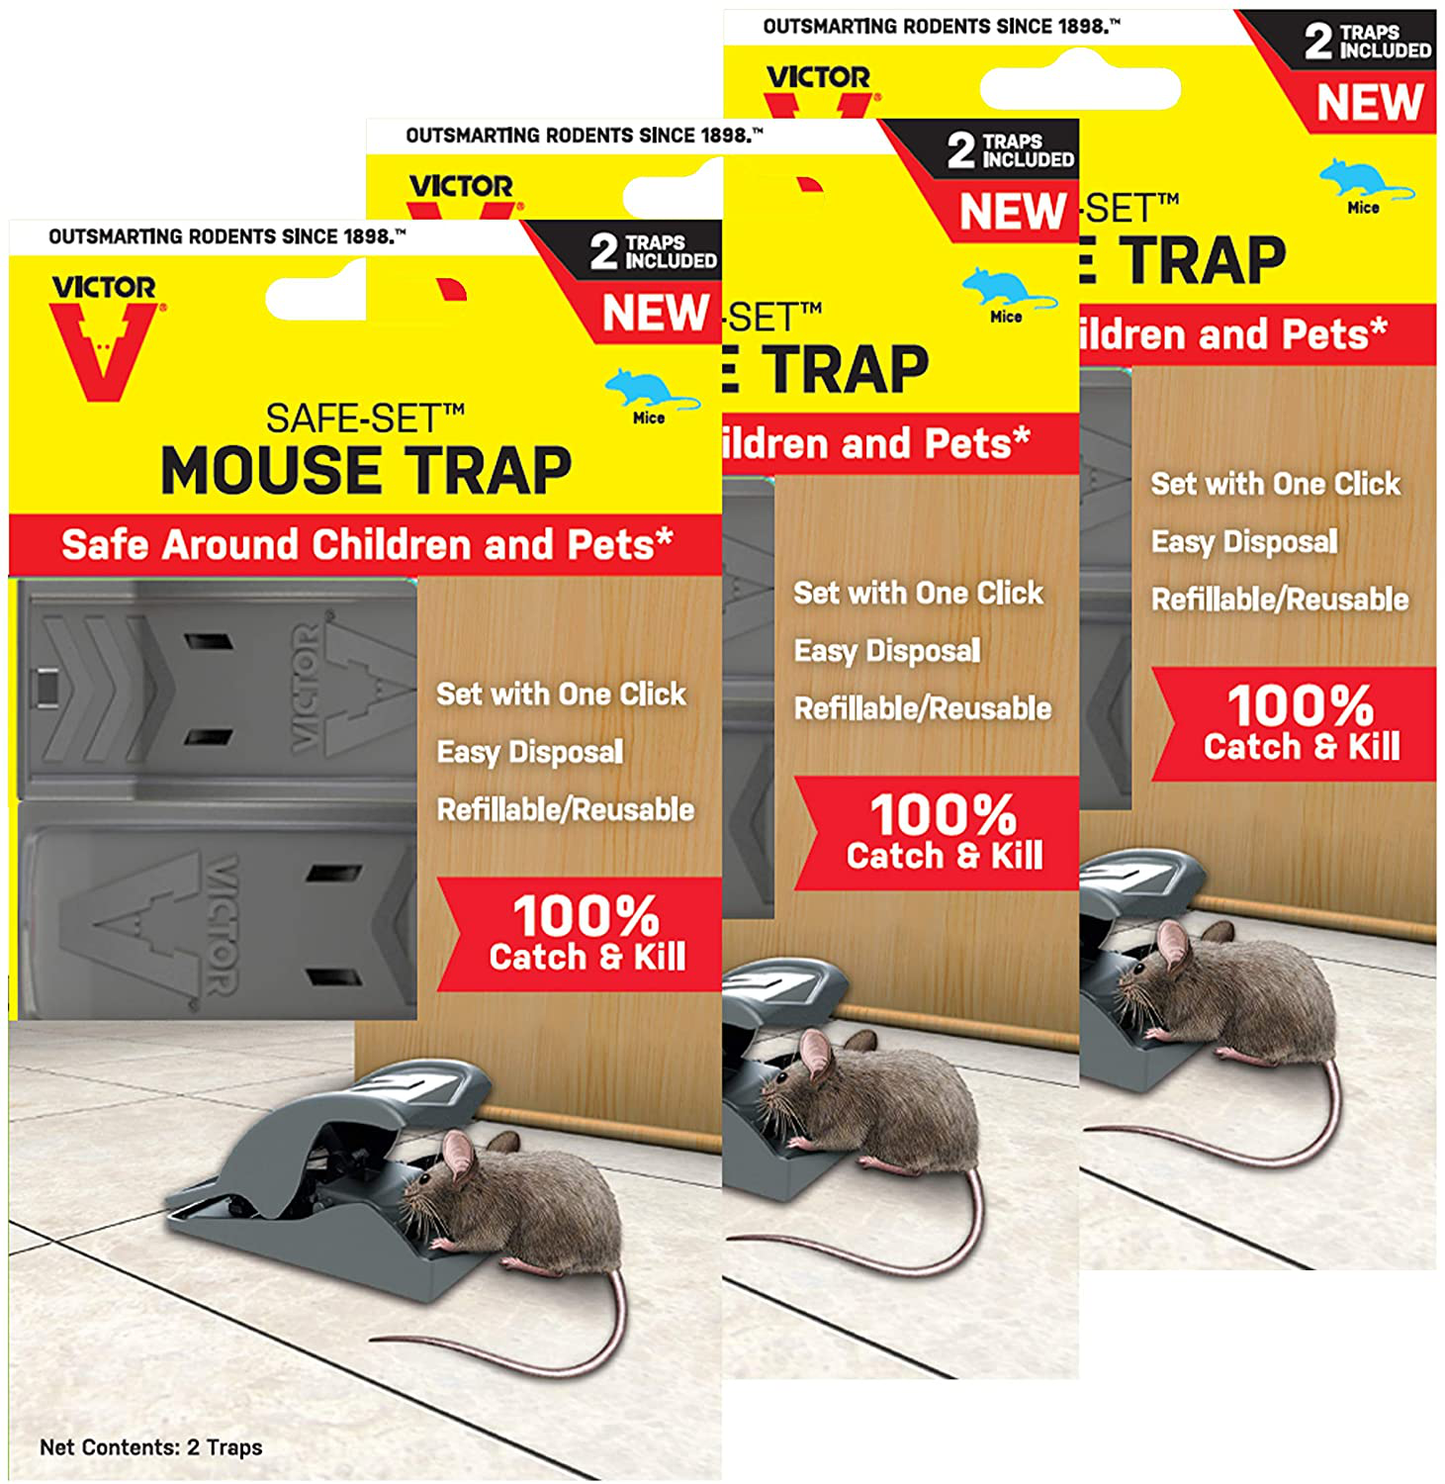 Victor M070-6SR Safe-Set Mouse Trap - 6 Traps